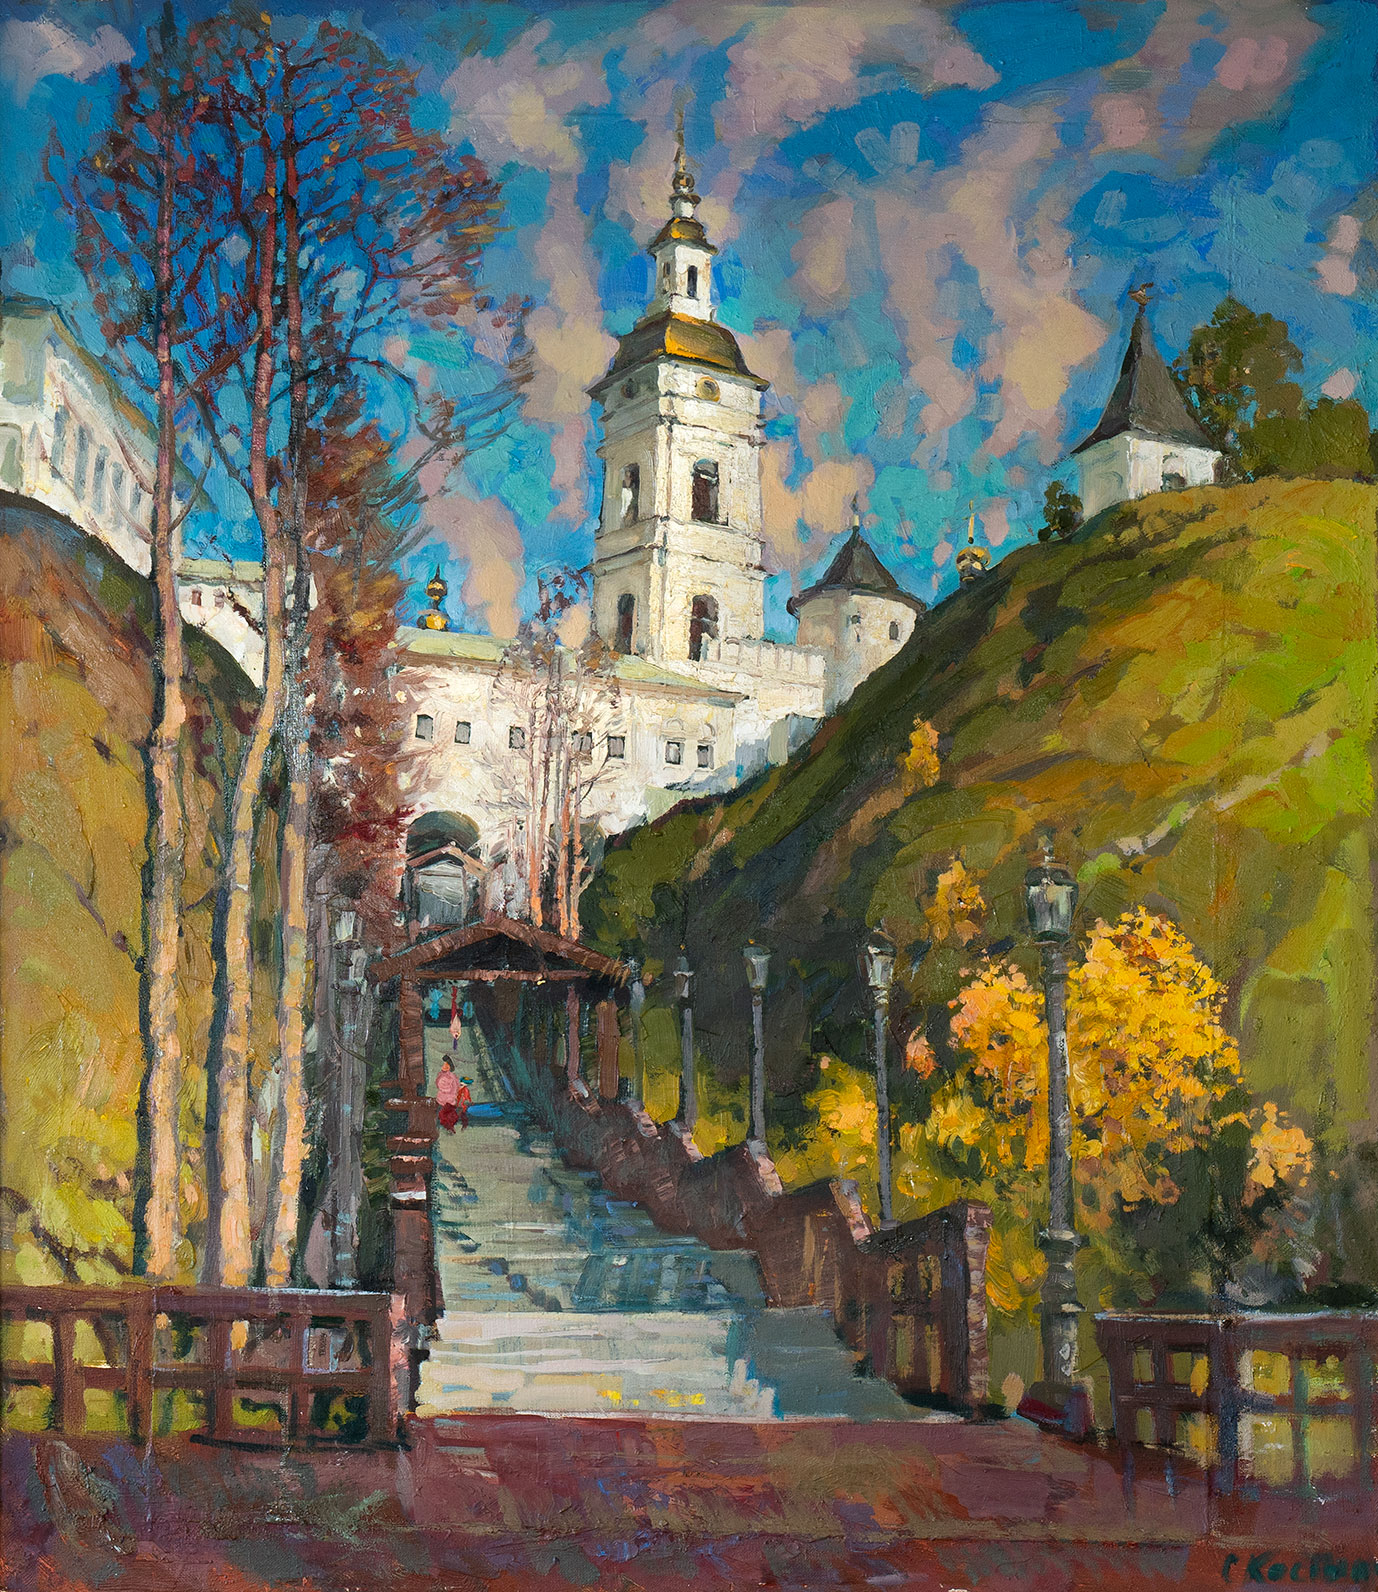 Tobolskiye Gates - 1, Sergey Kostylev, Buy the painting Oil